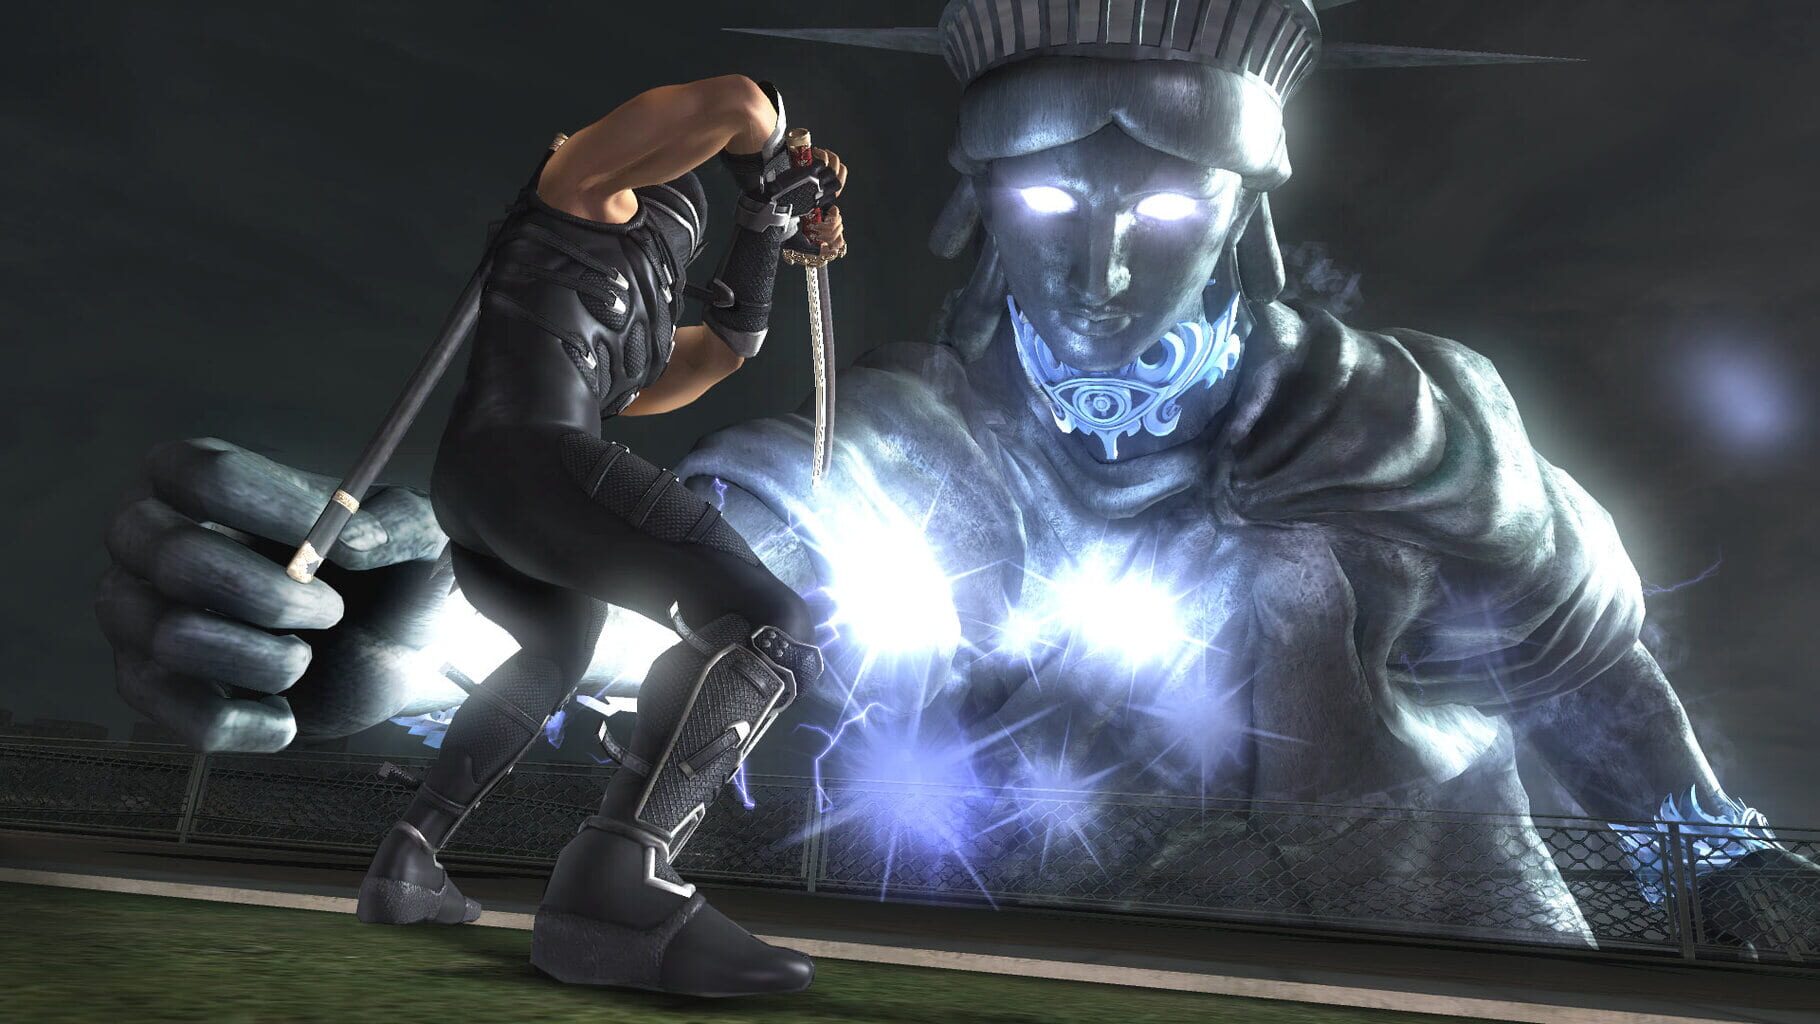 Ninja Gaiden Sigma 2 screenshots